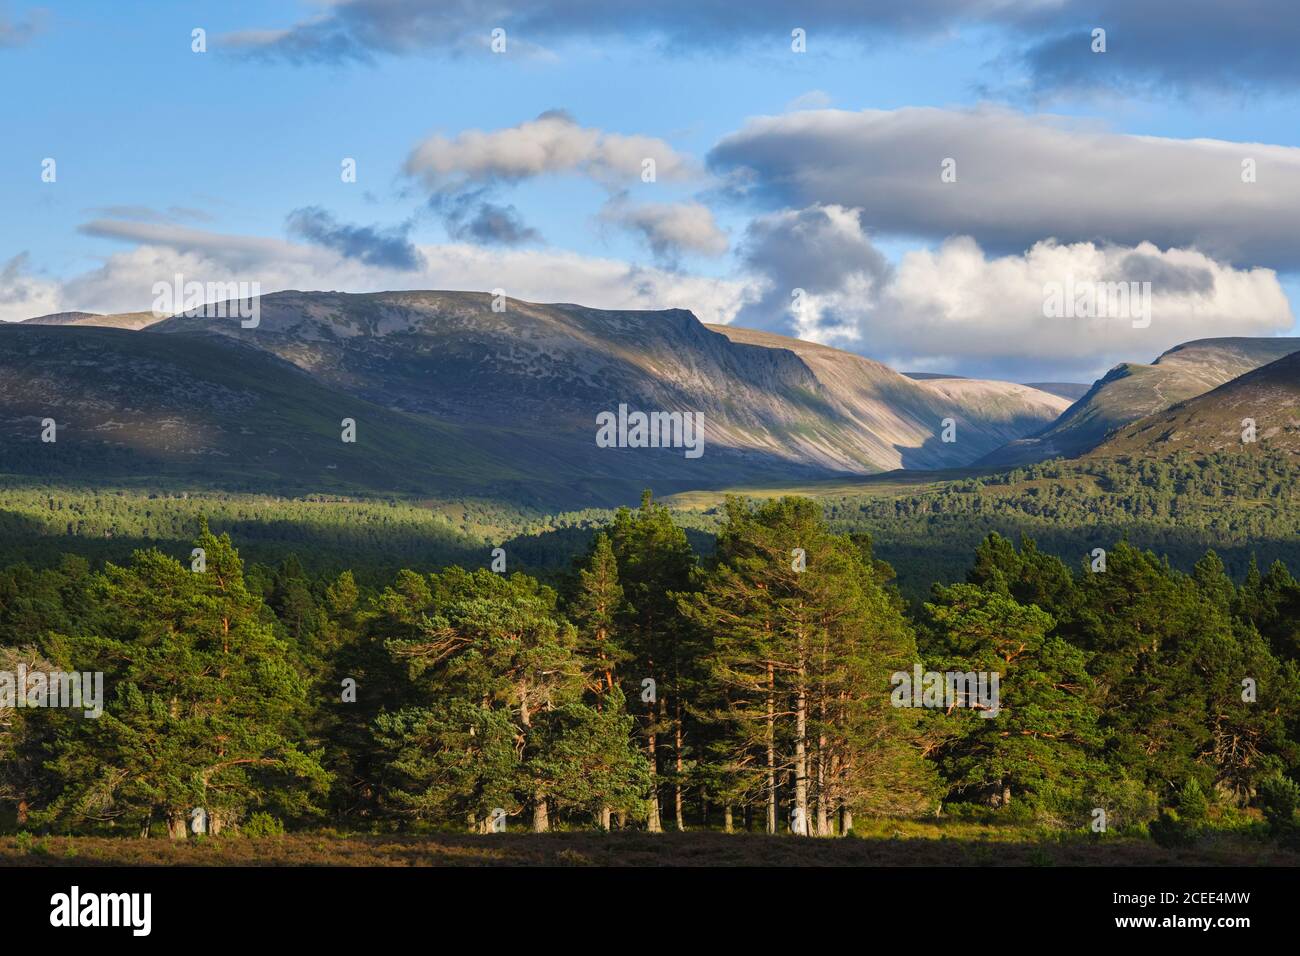 Ecosse, Highlands écossais, parc national de Cairngorms. La forêt calédonienne du domaine de Rothiemurchus avec la chaîne de montagnes de Cairngorm dans le dis Banque D'Images